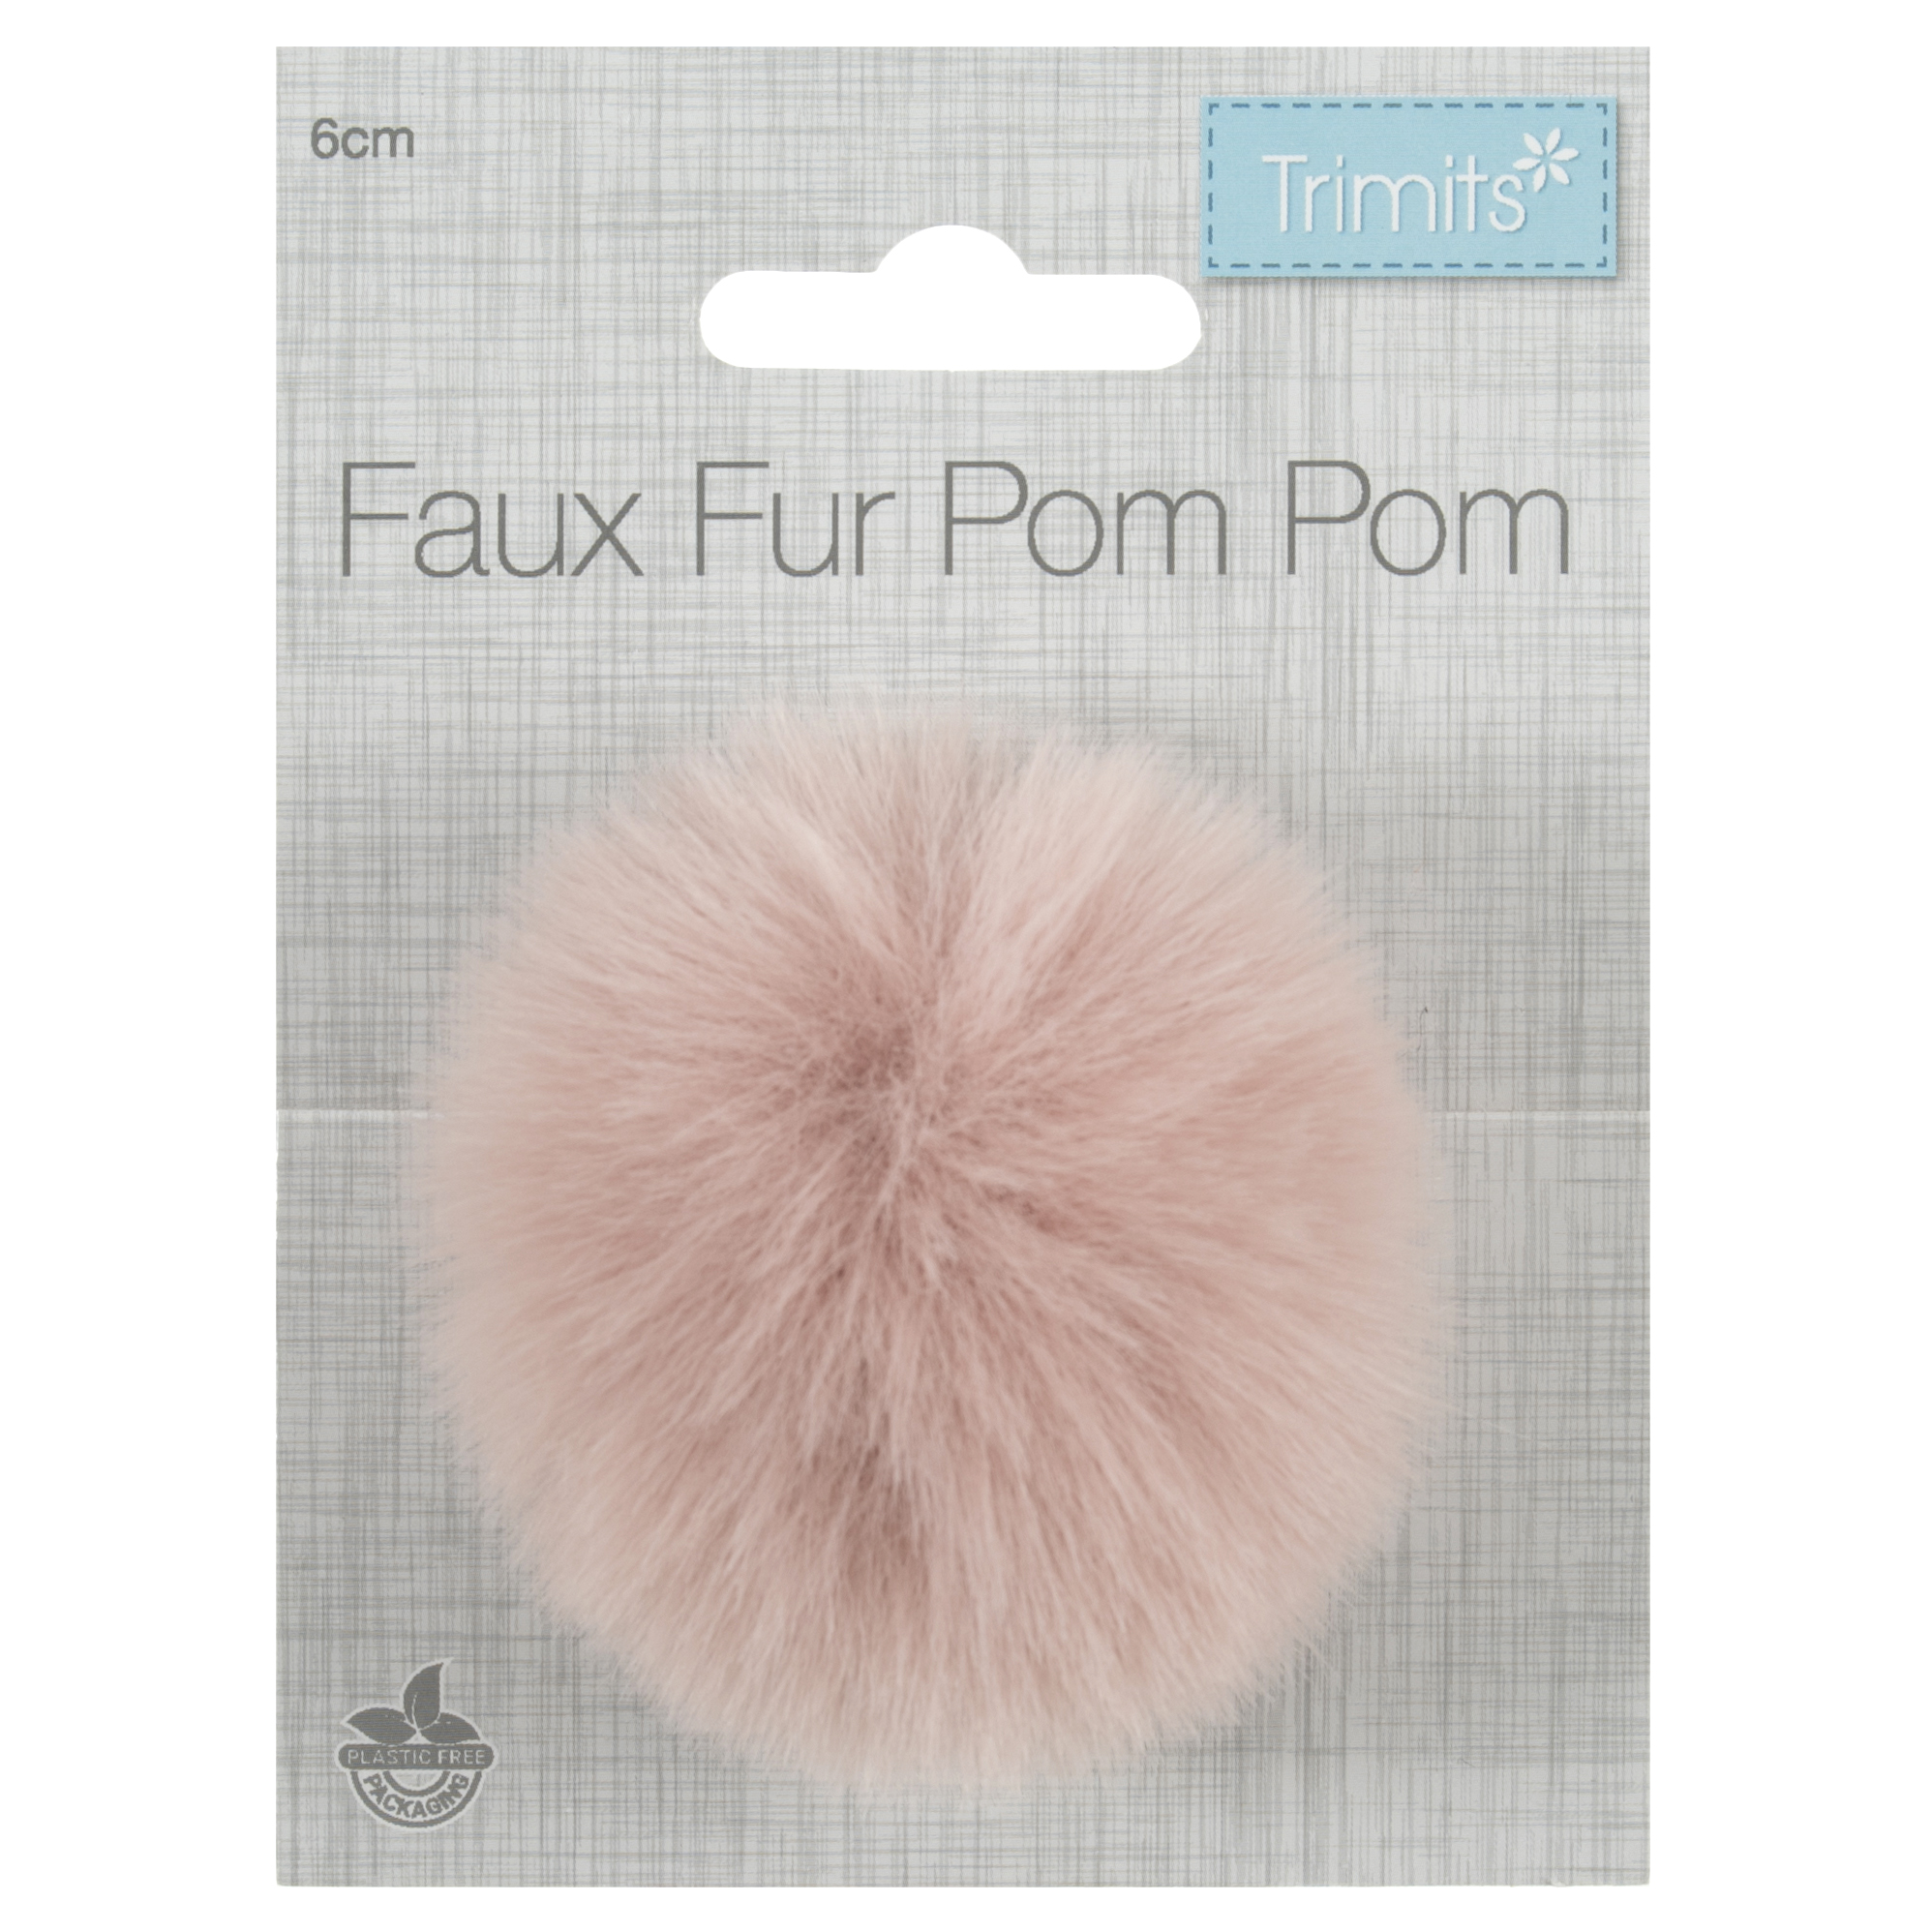 Trimits Faux Fur Pom Pom - Light Pink (6cm)